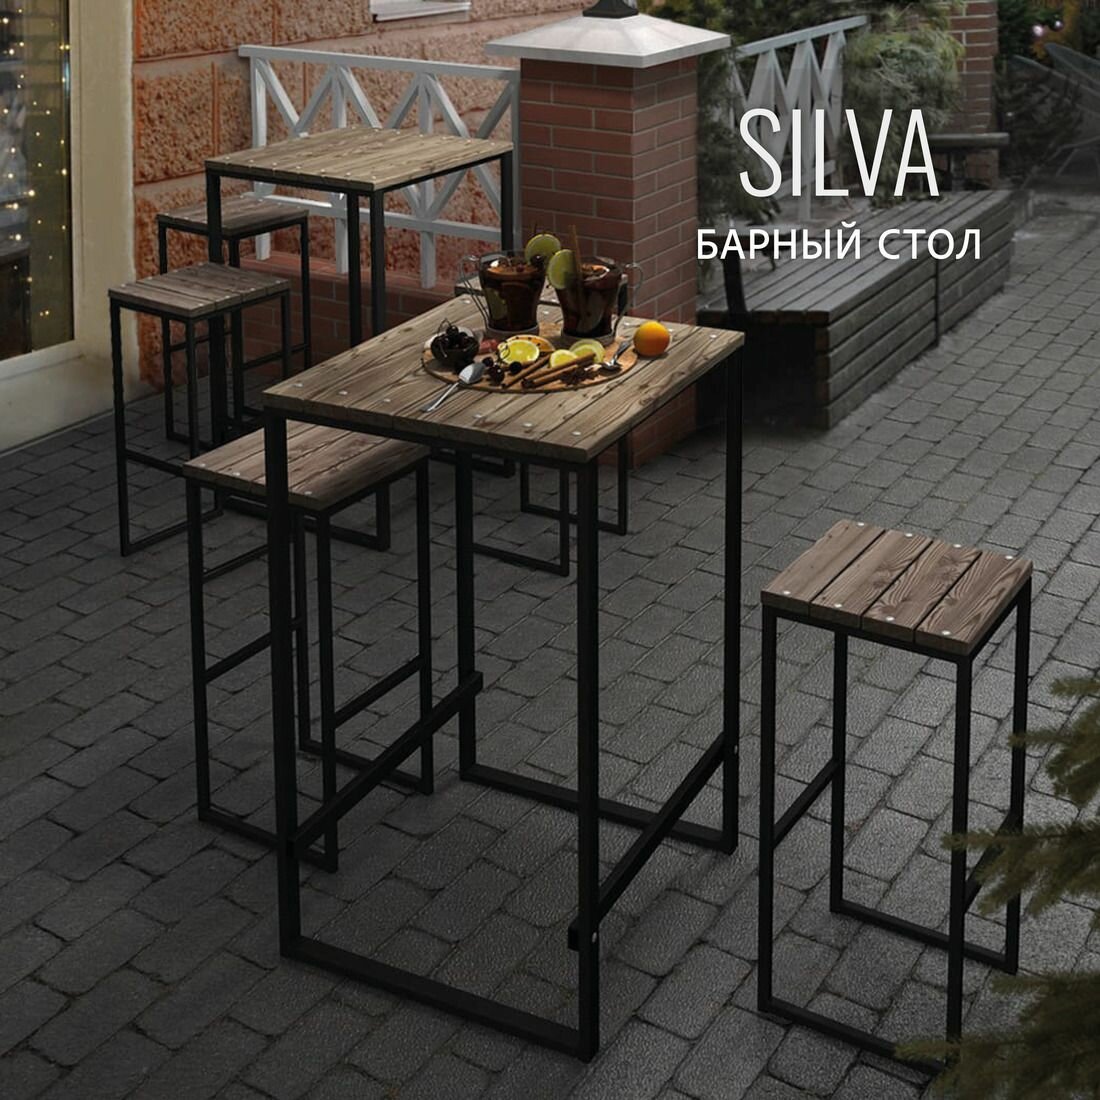 Барный стол садовый SILVA loft, коричневый, уличный, деревянный, металлический, 70х70х110 см, гростат